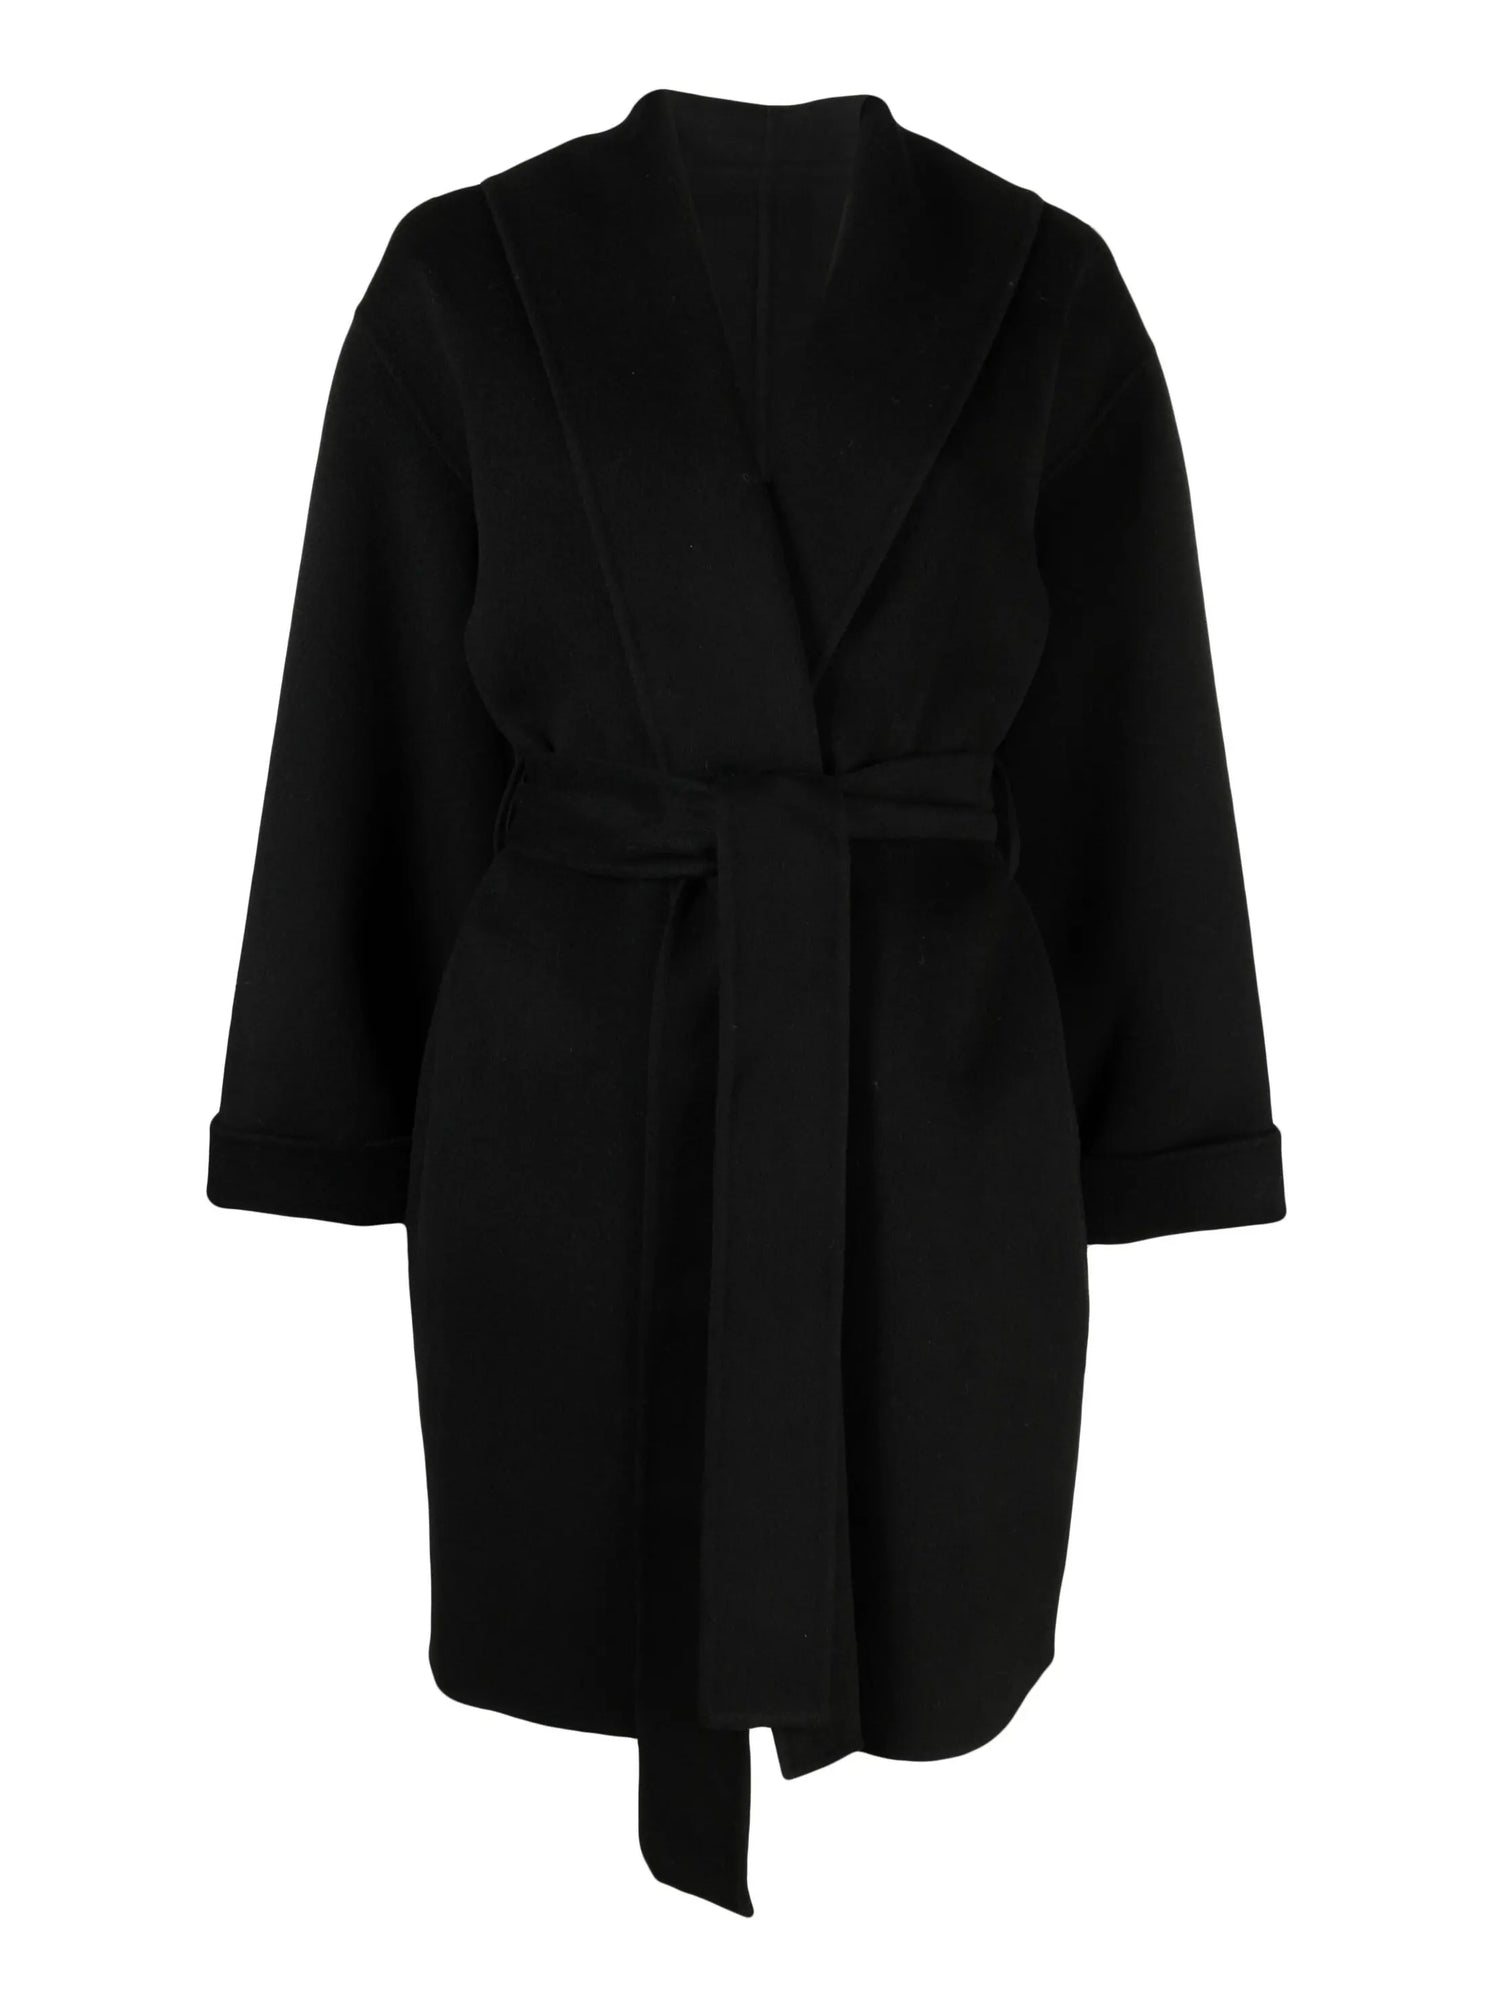 Trullas coat, black